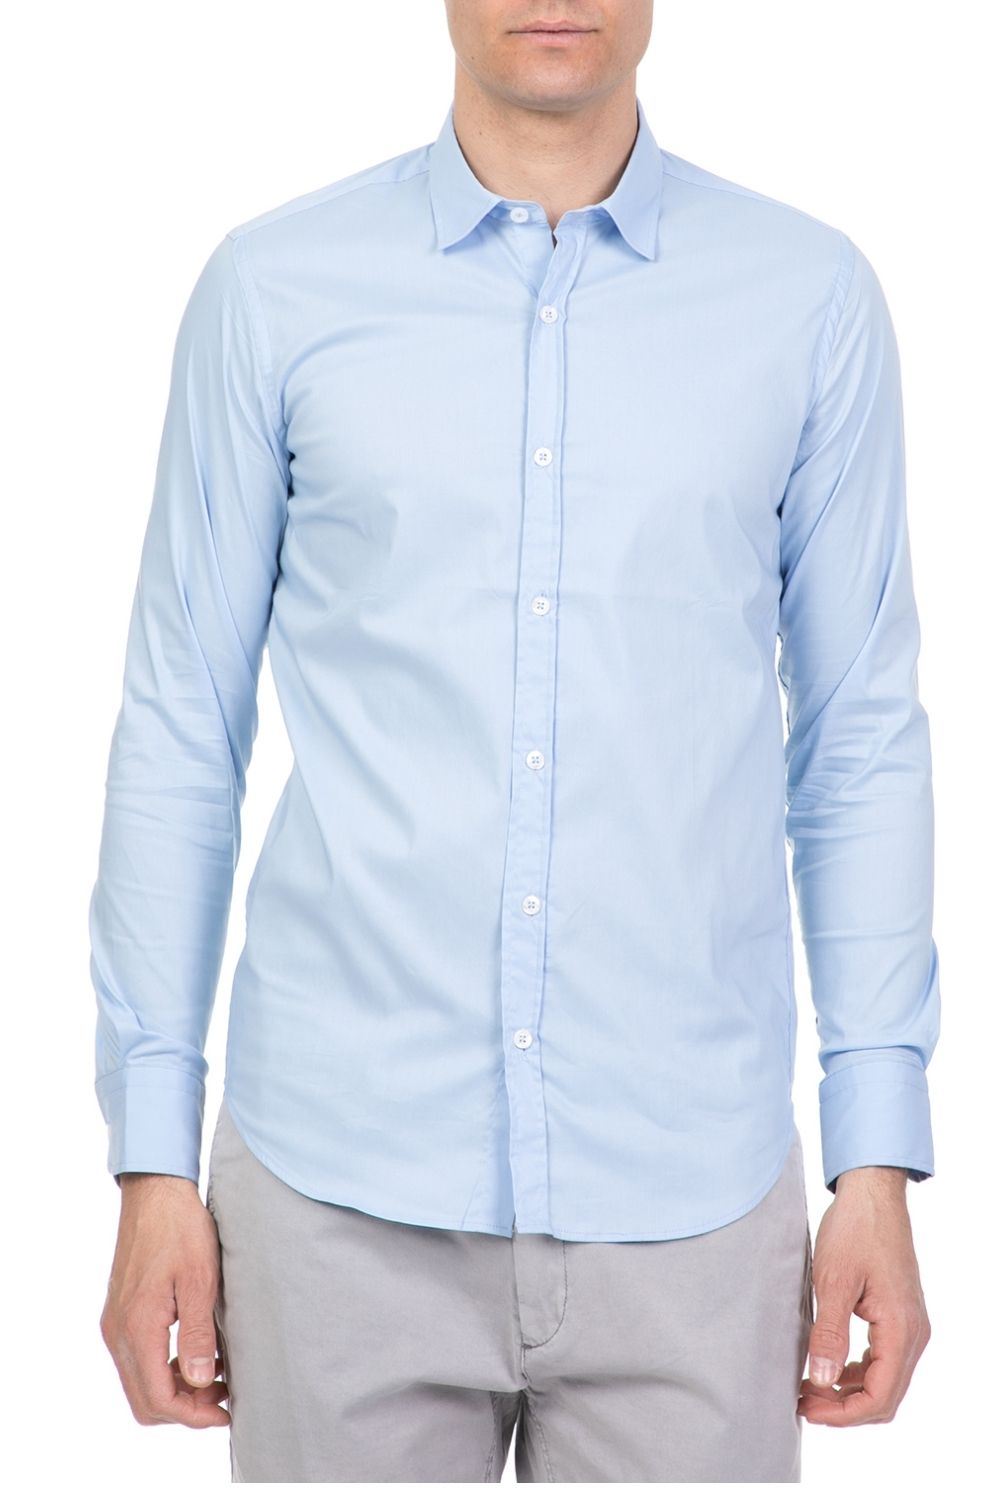 Ανδρικά/Ρούχα/Πουκάμισα/Μακρυμάνικα SSEINSE - Ανδρικό πουκάμισο SSEINSE γαλάζιο